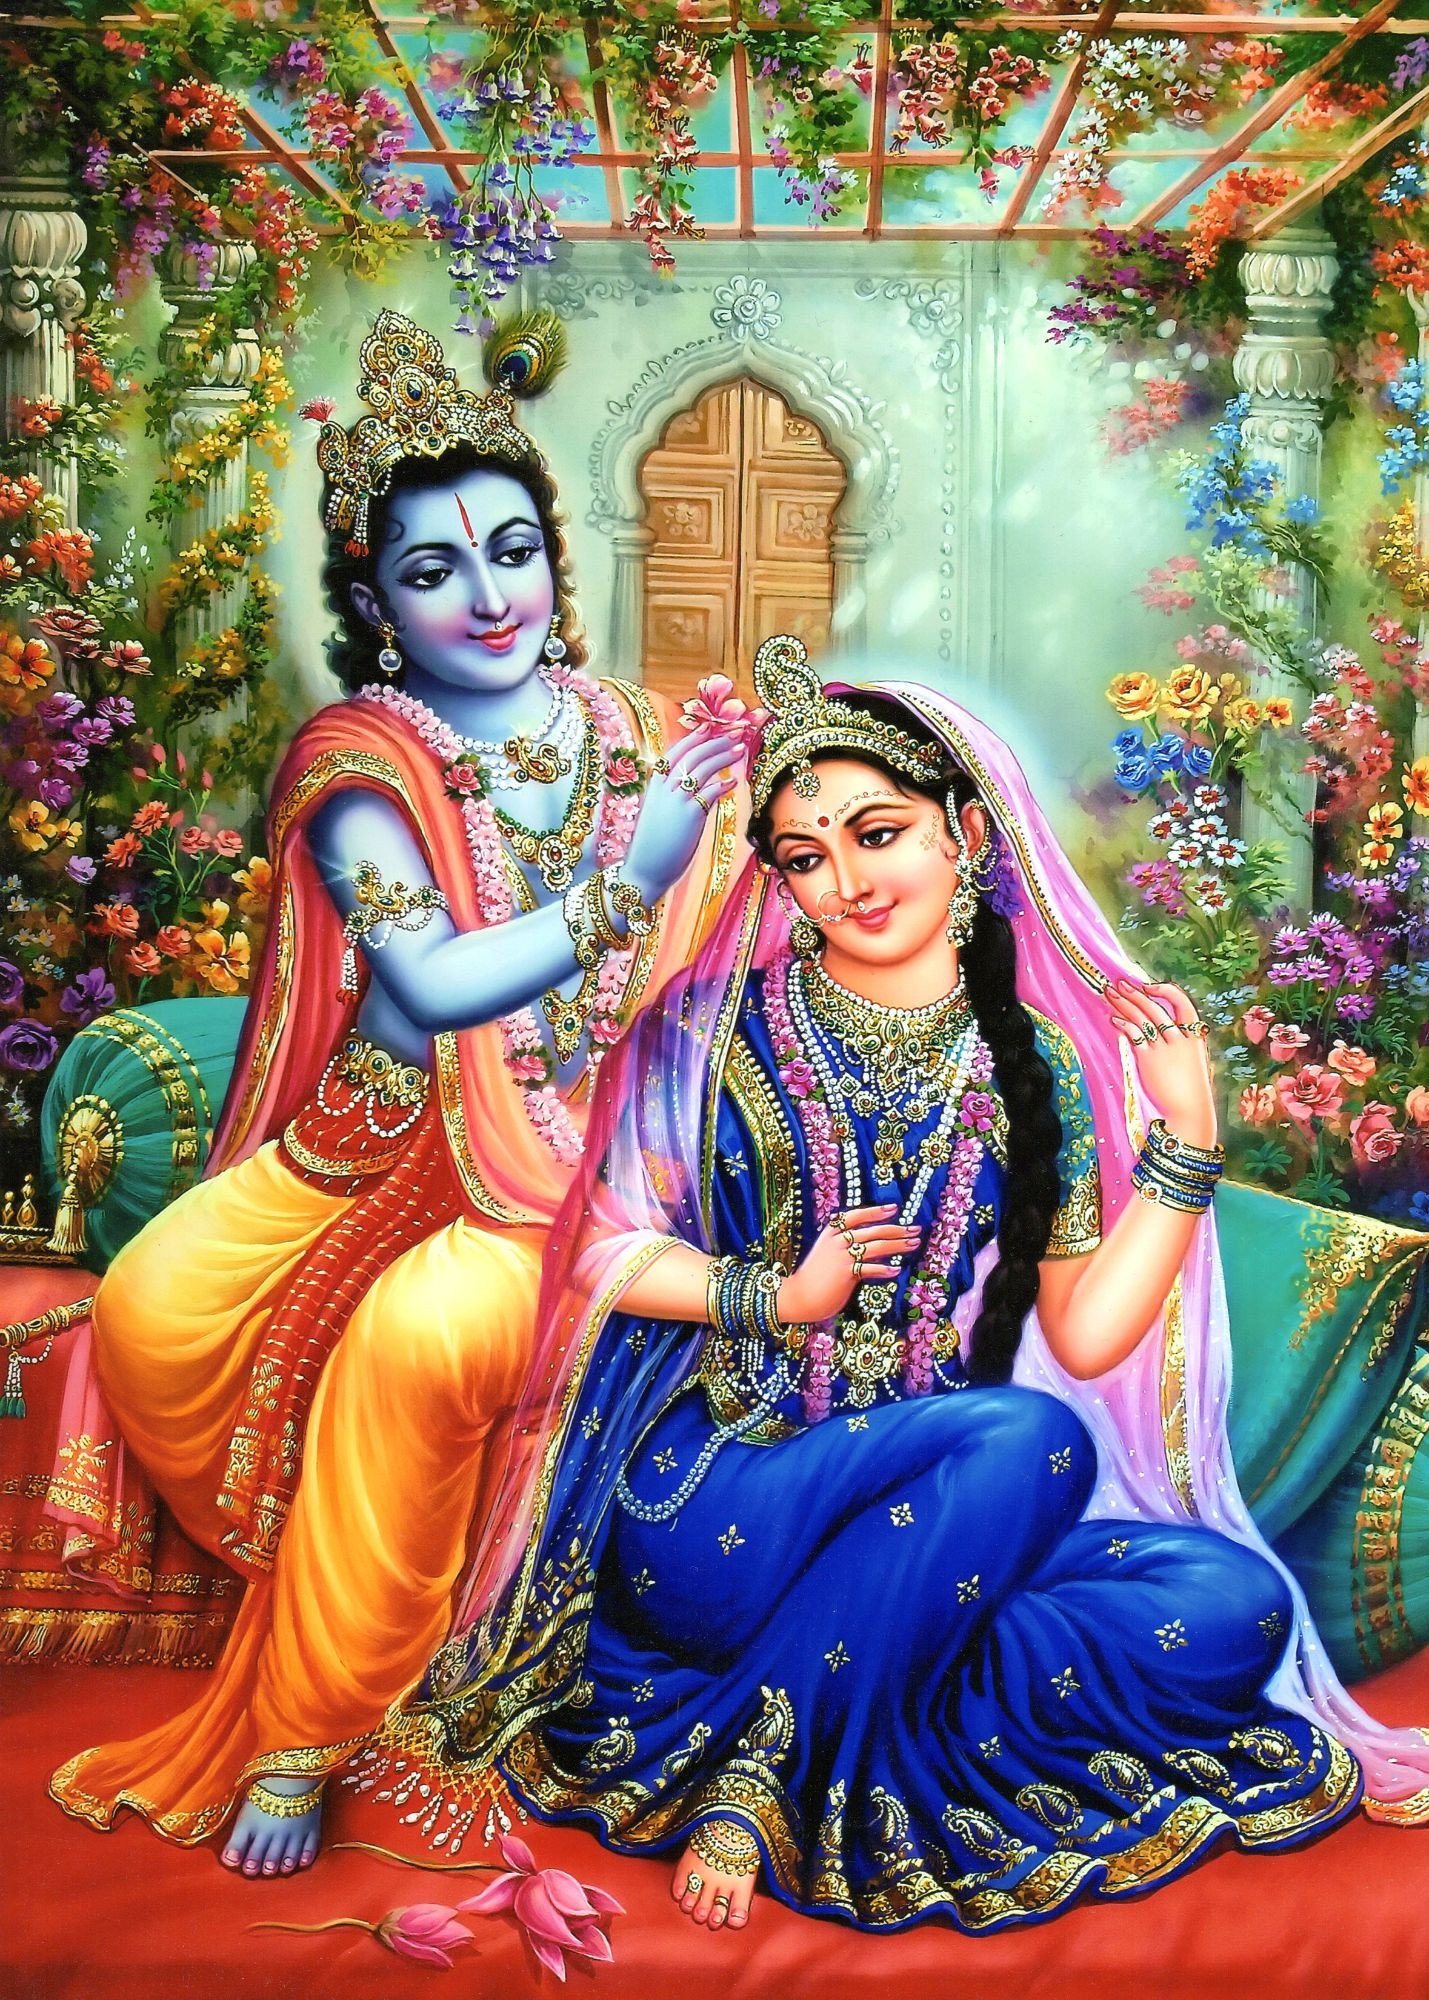 Beautiful Images of Krishna Bhagwan